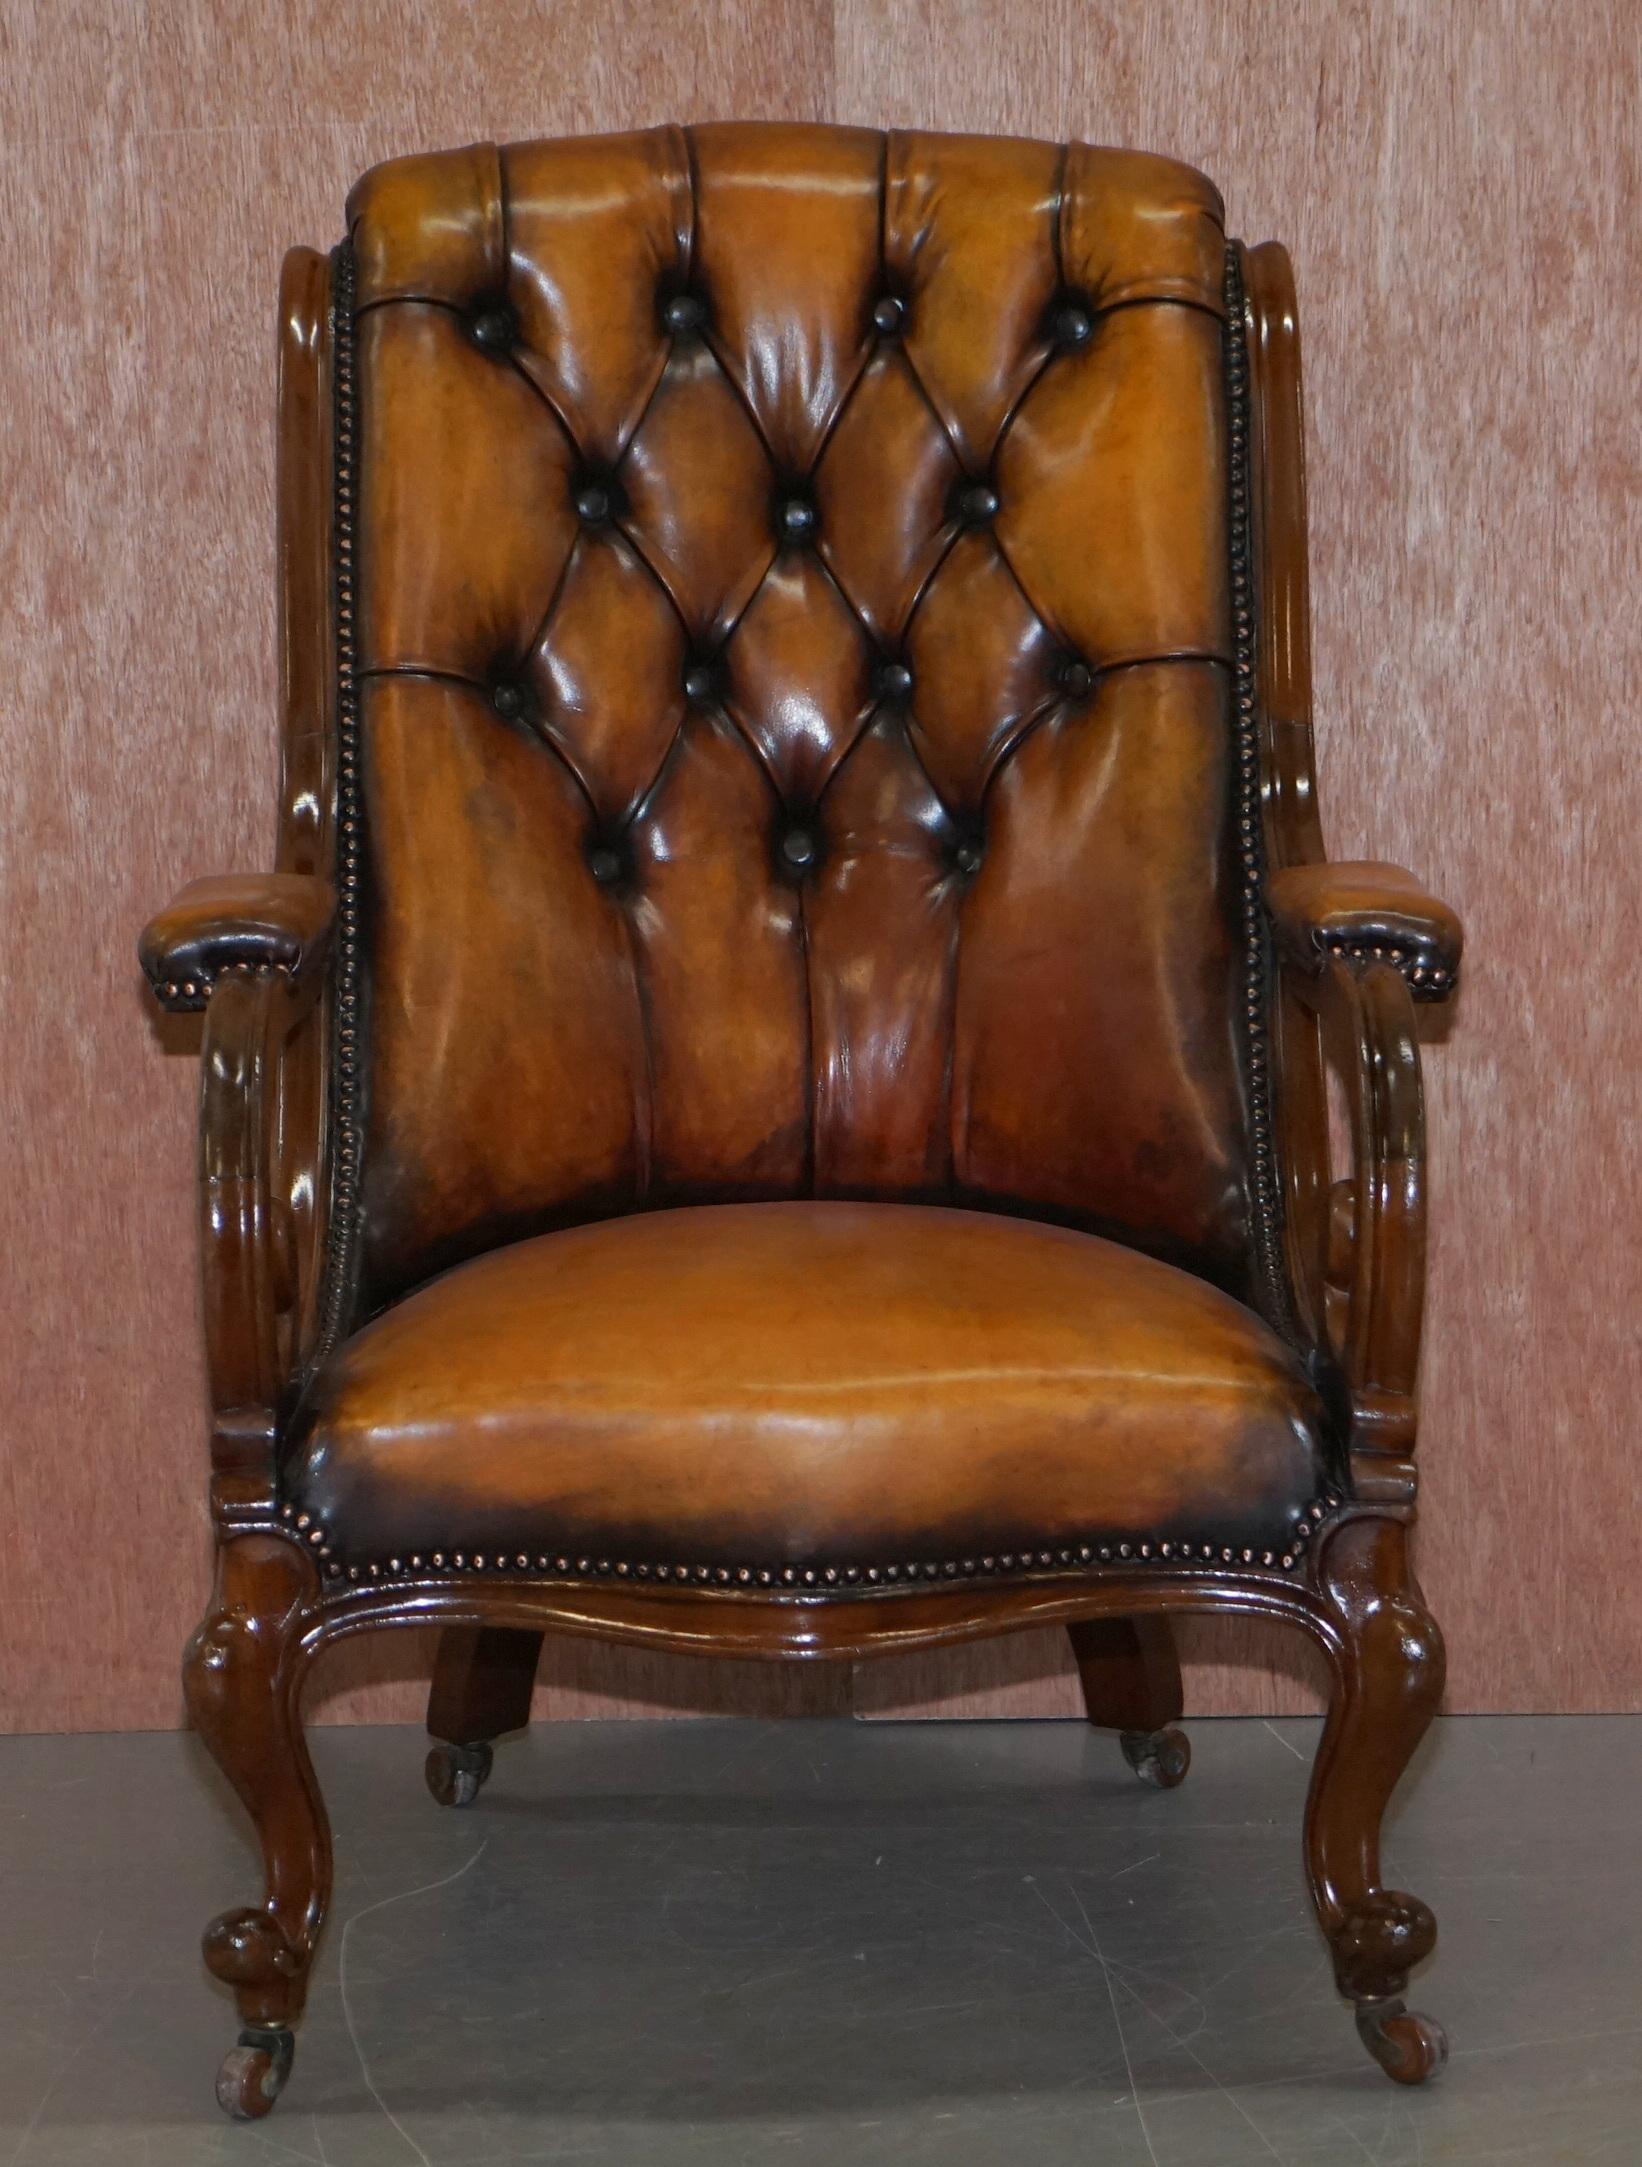 Wir freuen uns, diesen seltenen, vollständig restaurierten, um 1840 gefertigten Chesterfield-Lesesesessel aus handgefärbtem braunem Leder zum Verkauf anzubieten

Dieser Stuhl ist wirklich ziemlich exquisit, er ist ein so genannter Show-Frame.